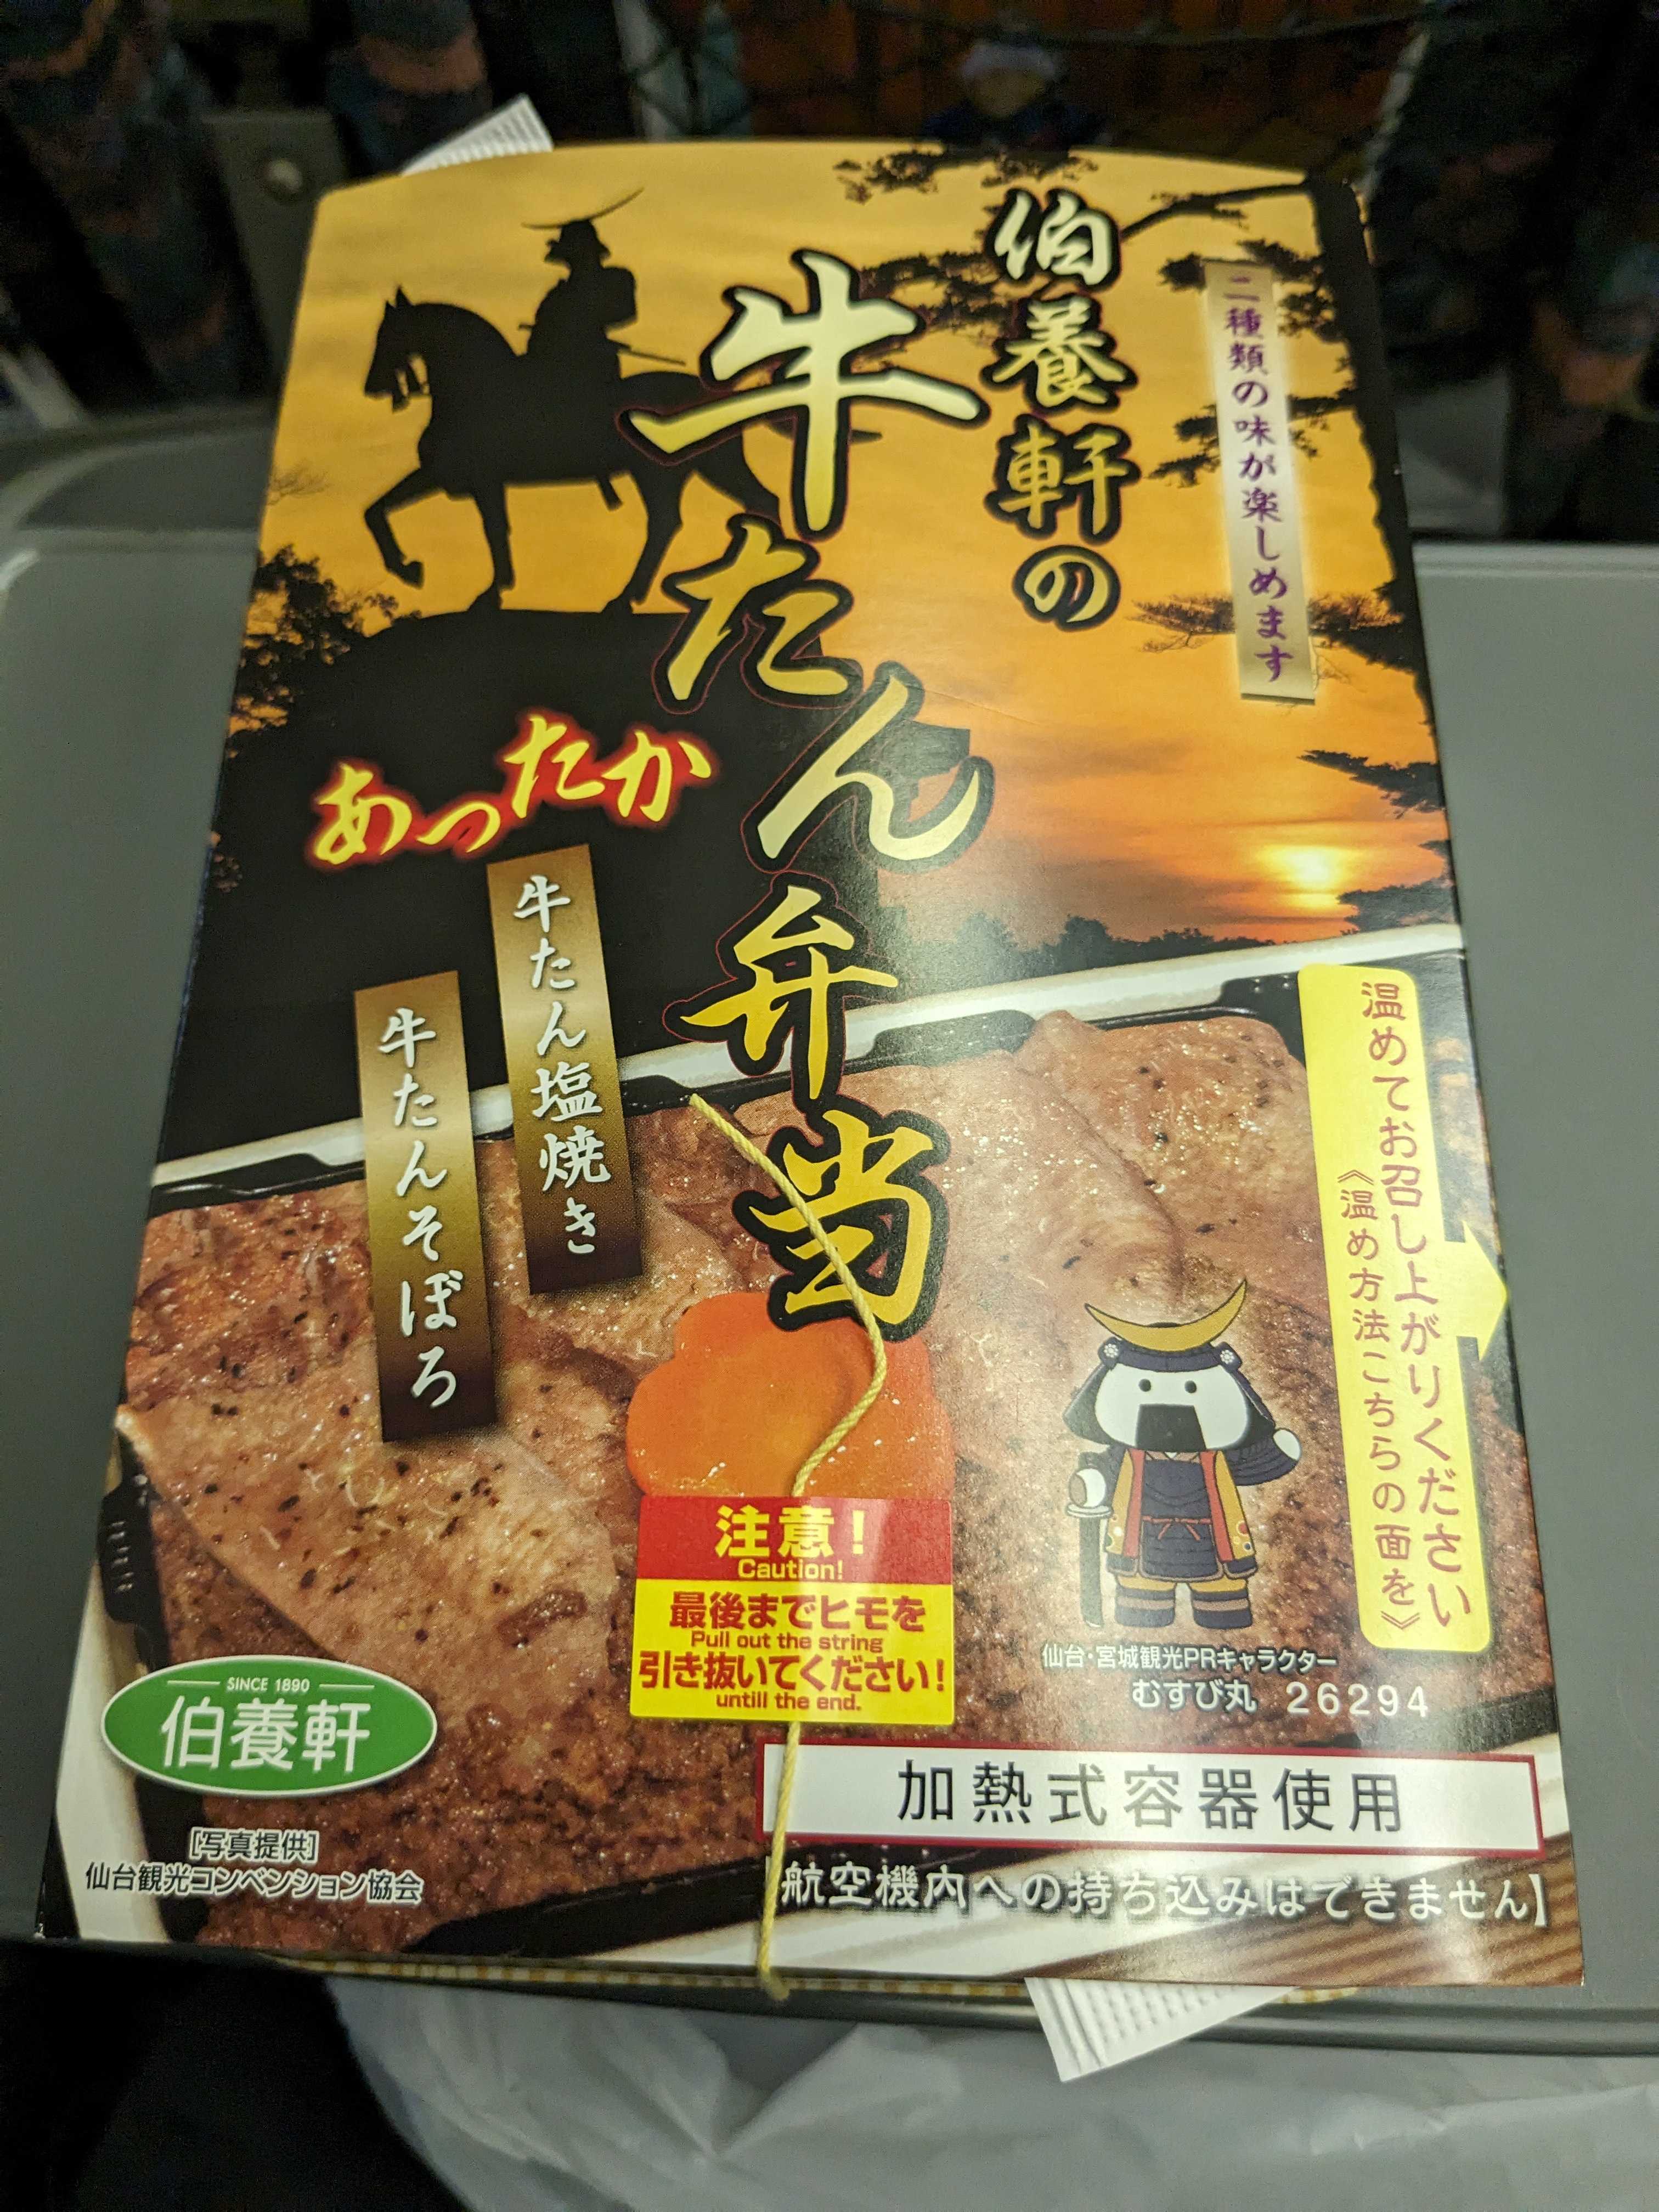 仙台駅の駅弁屋祭で購入した伯養軒の牛タン弁当